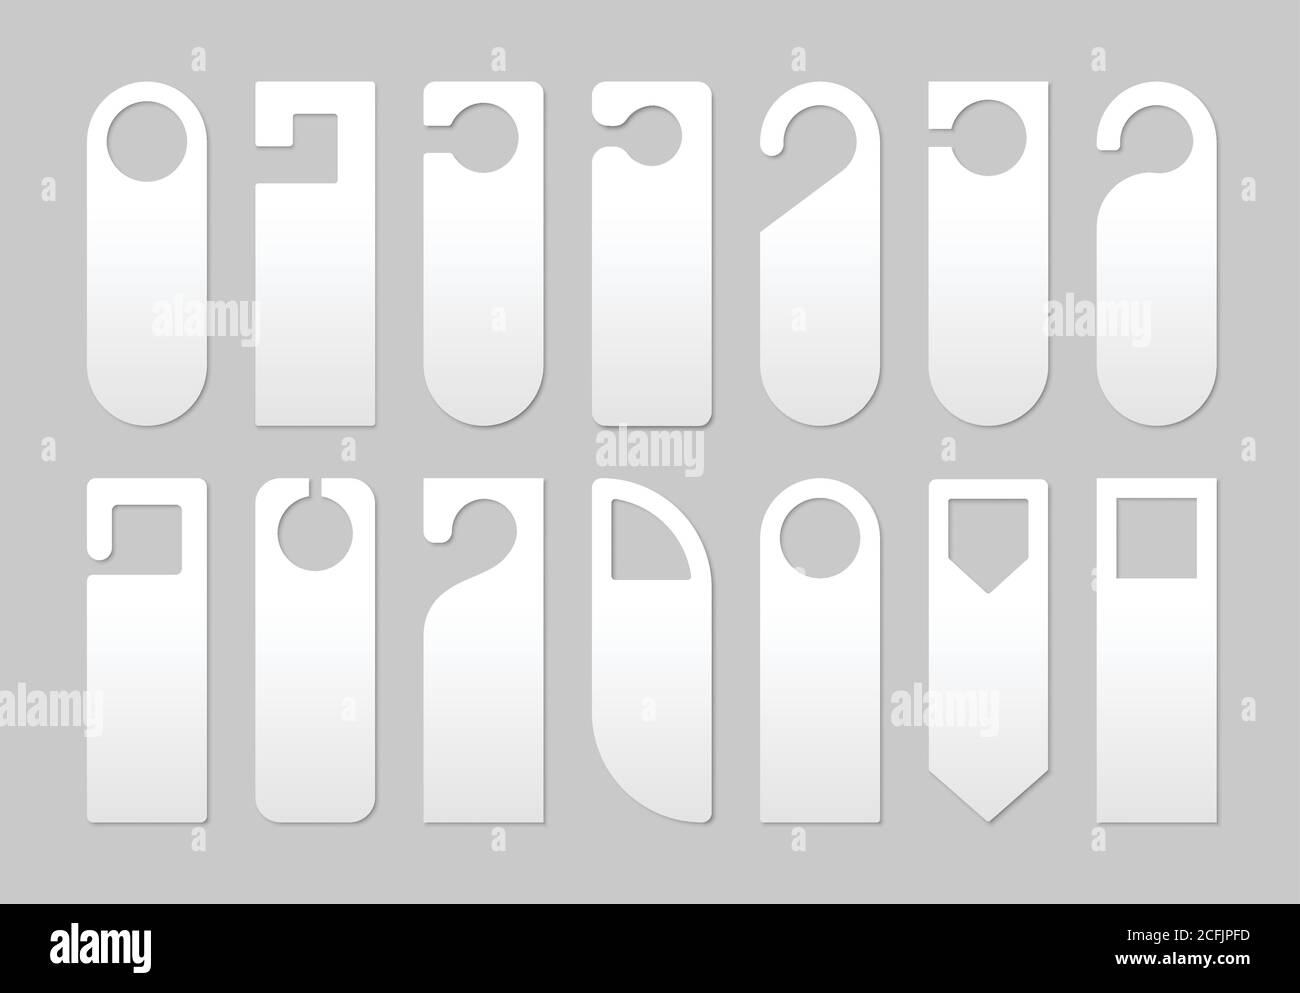 Illustrazione vettoriale creativa del set di staffe di bloccaggio per maniglie in plastica realistiche. Mockup vuoto. Illustrazione Vettoriale